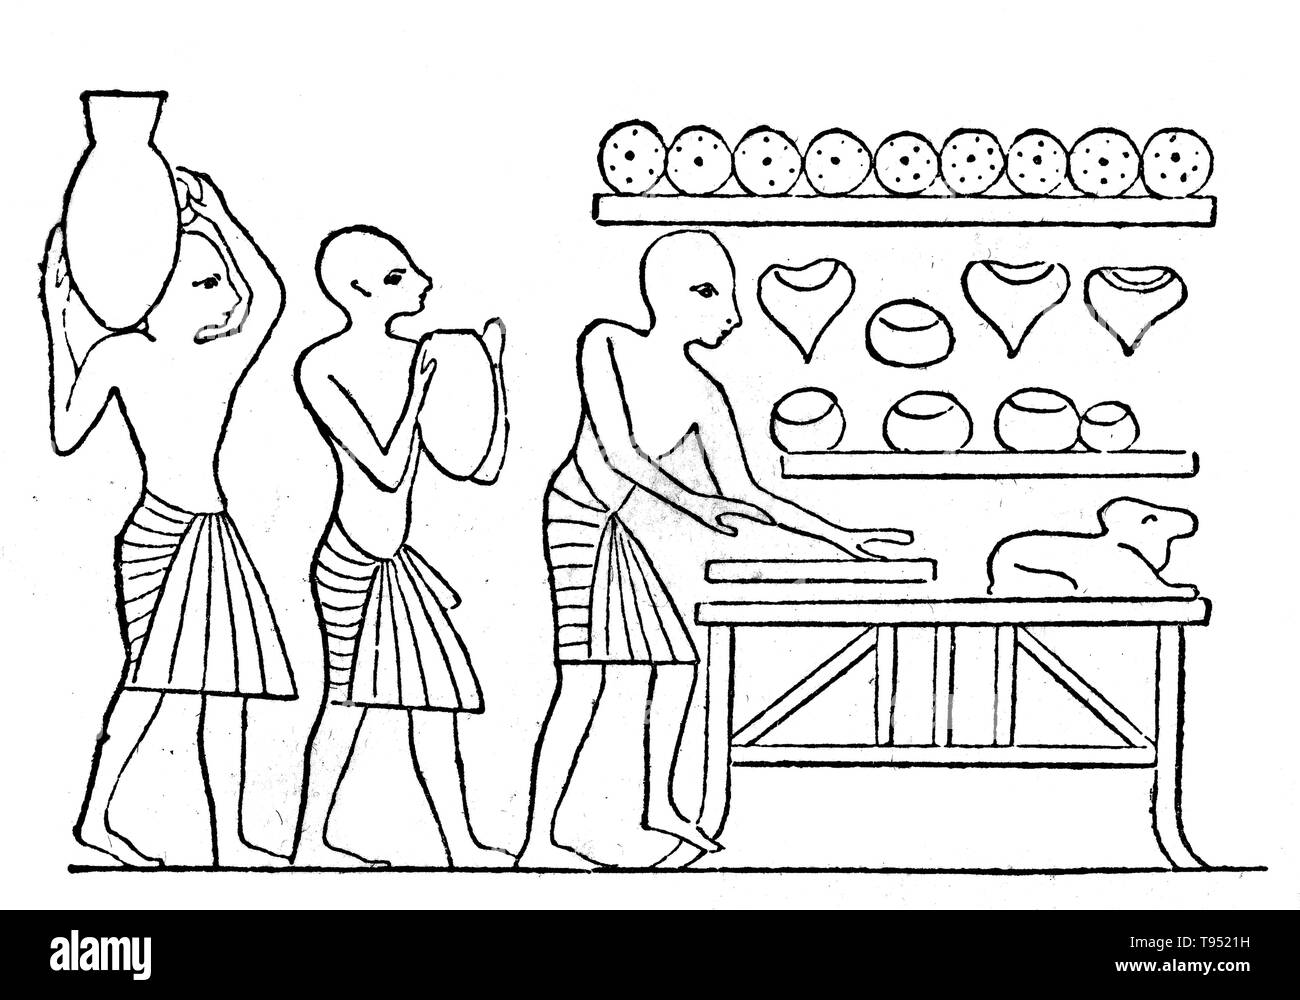 La cucina di antico Egitto copre un arco di oltre tremila anni ma ancora trattenuto molti tratti coerenti fino a ben in tempi greco-romana. Le graffette di entrambi i poveri e ricchi egiziani erano del pane e della birra, spesso accompagnata da verde-ripresi cipolle, altri ortaggi, e in misura minore di carne, selvaggina e pesce. Il cibo può essere preparato mediante cottura, cottura, con punto di ebollizione, la cottura alla griglia, la frittura o tostatura. Foto Stock